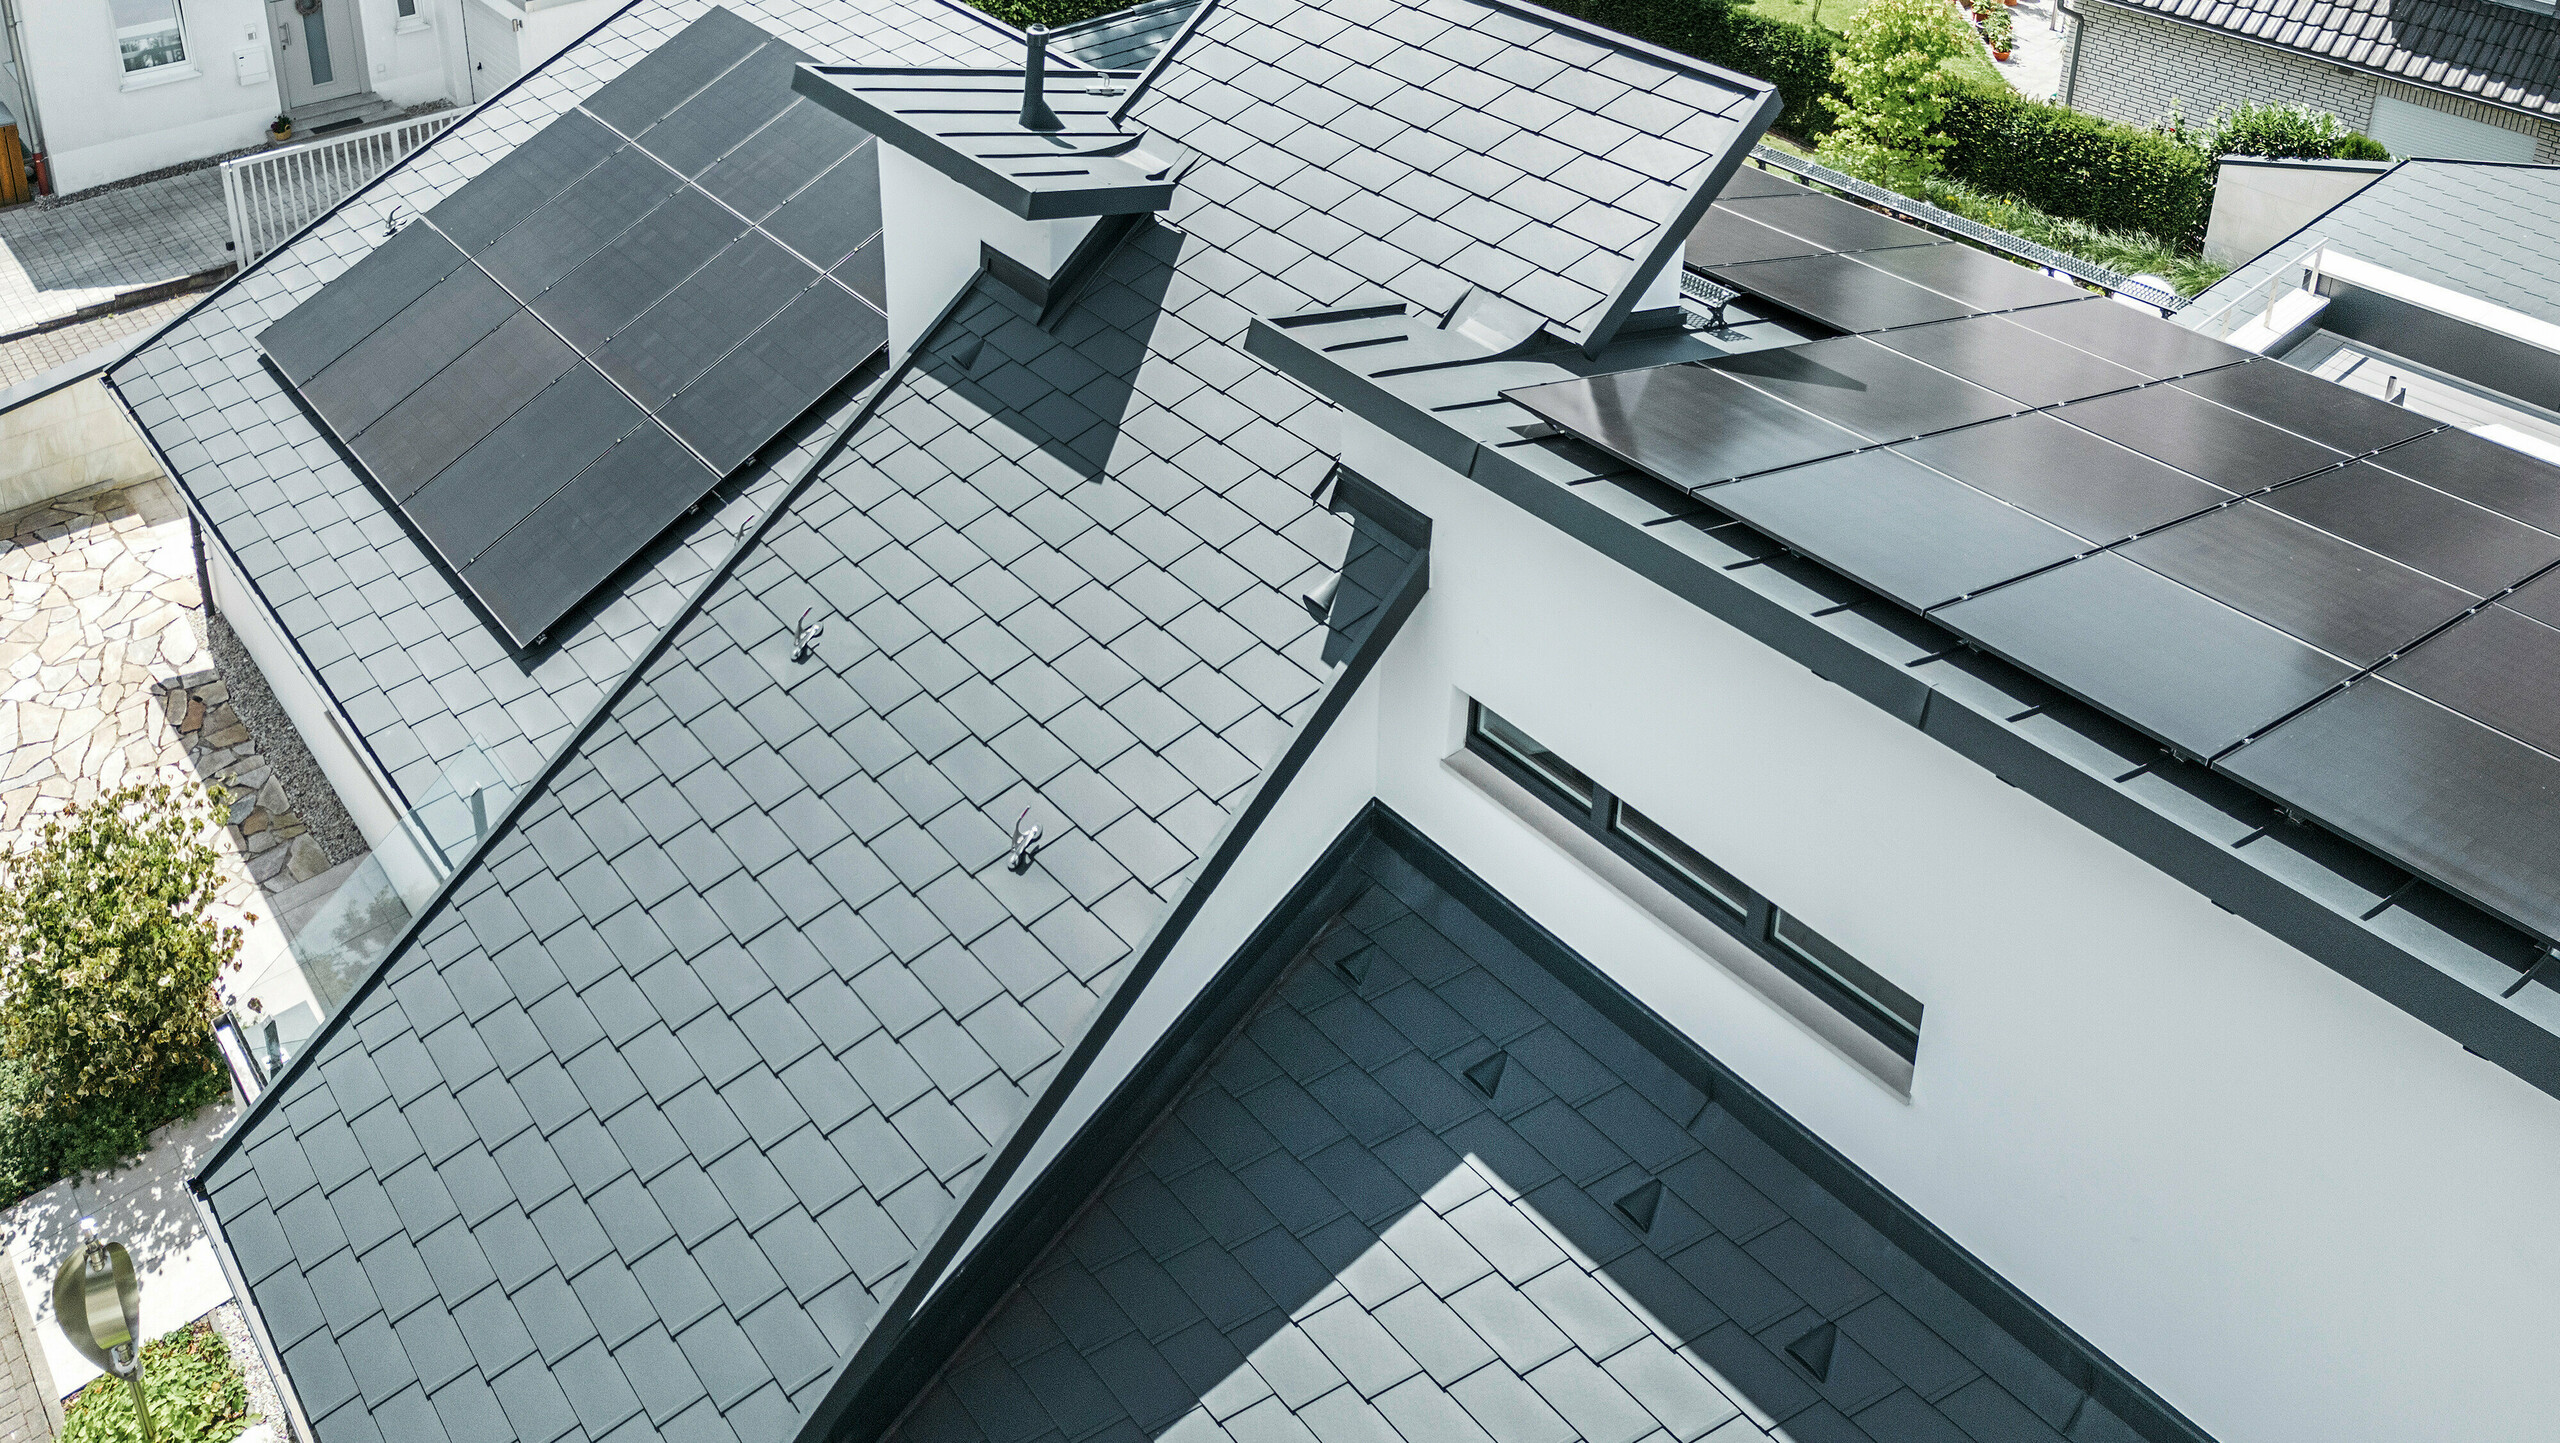 Modernes Einfamilienhaus in Dortmund mit einer fortschrittlichen Photovoltaikanlage, installiert auf einem PREFA Dachsystem bestehend aus Dachschindeln DS.19 und PREFALZ Stehfalzdeckung in der Farbe P.10 Anthrazit. Die PV-Anlage ist mittels Vario Solarhalter für die Dachschindeln und des PREFALZ Vario Solarhalter für die Stehfalzbahnen befestigt. Die Solaranlage gewährleistet eine effiziente Energieerzeugung aus erneuerbaren Energiequellen. Das durchdachte Dachdesign bietet eine optimale Balance zwischen Ästhetik und Funktionalität.